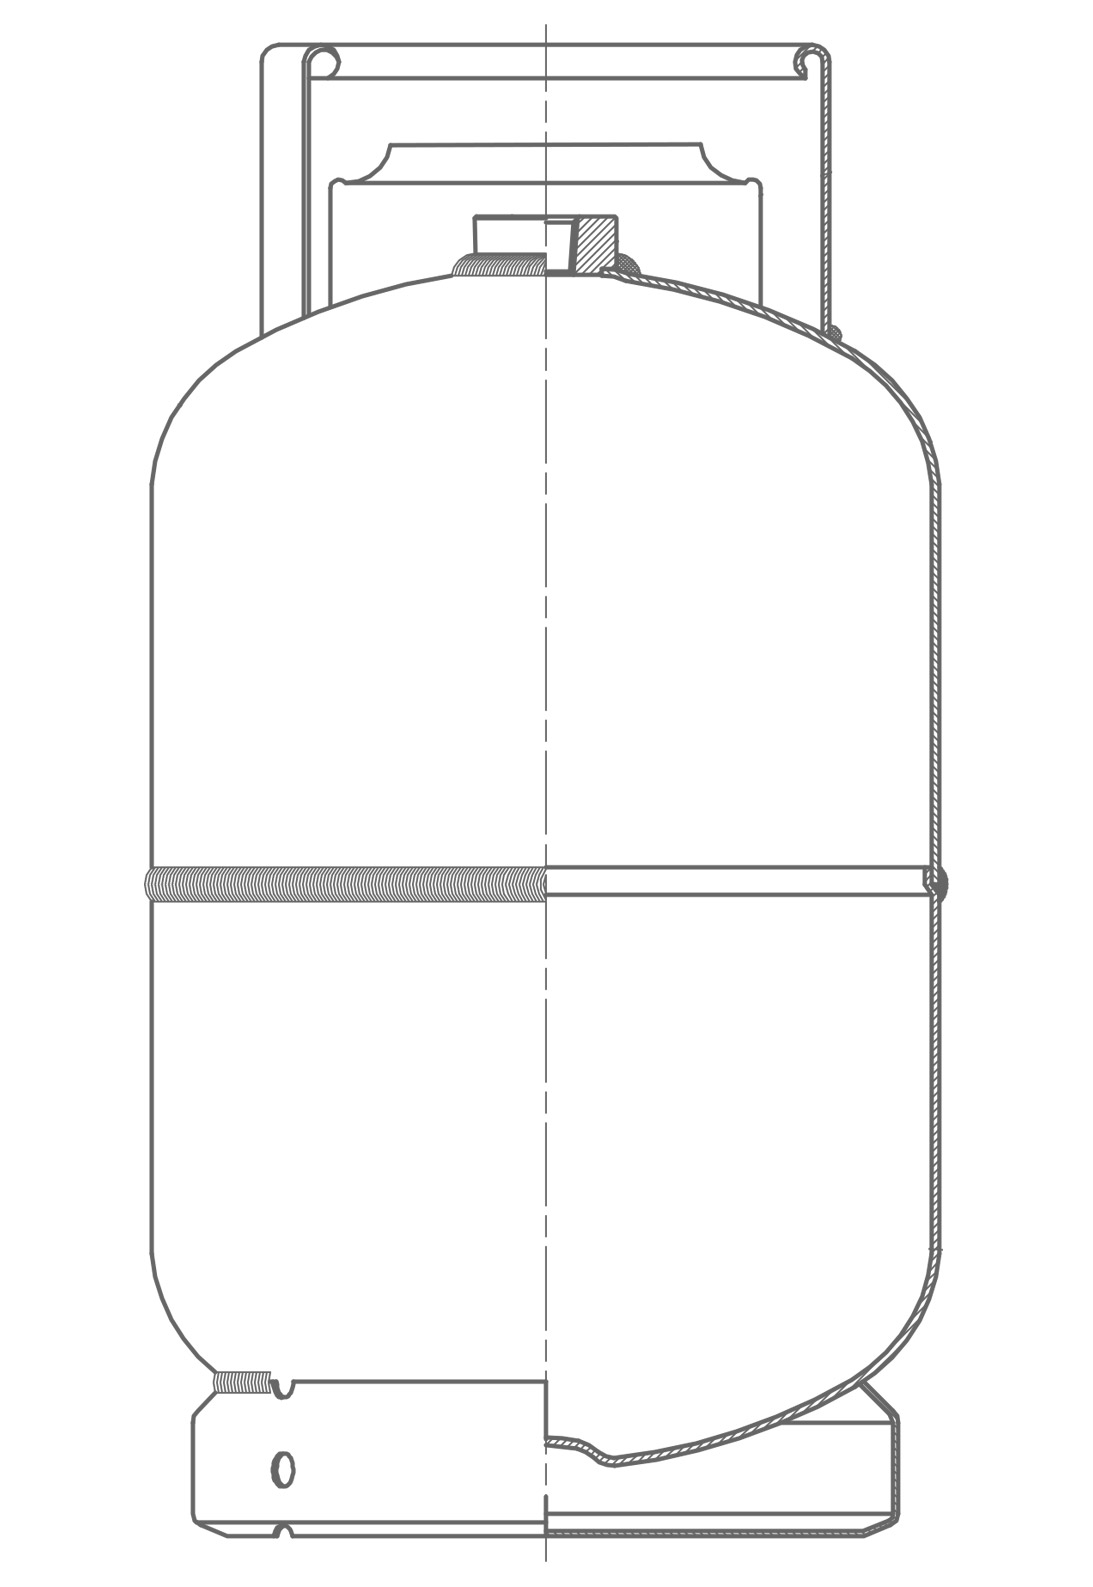 Technische Zeichnung einer Gasflasche